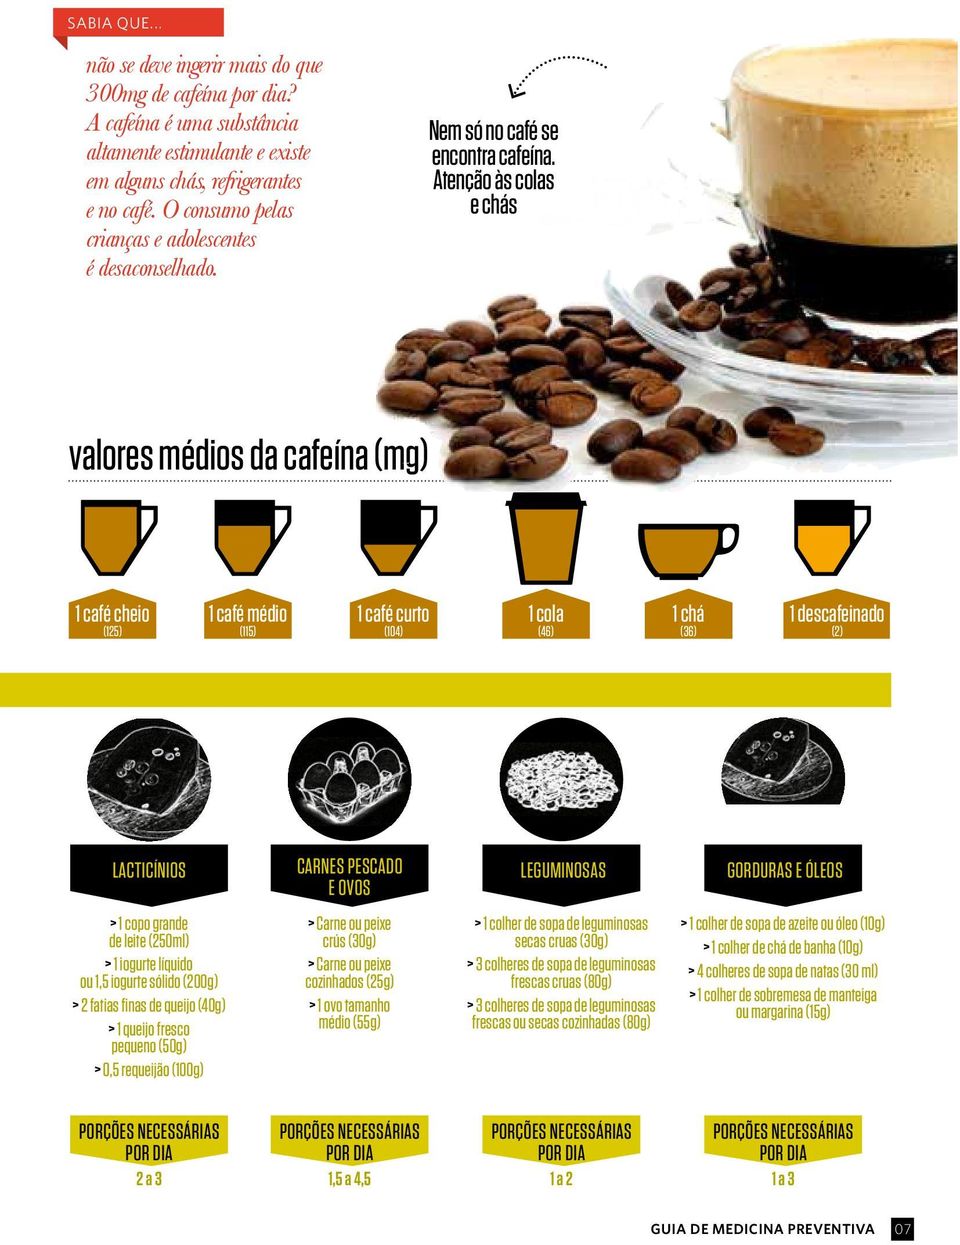 Atenção às colas e chás valores médios da cafeína (mg) 1 café cheio (125) 1 café médio (115) 1 café curto (104) 1 cola (46) 1 chá (36) 1 descafeinado (2) LACTICÍNIOS CARNES PESCADO E OVOS LEGUMINOSAS